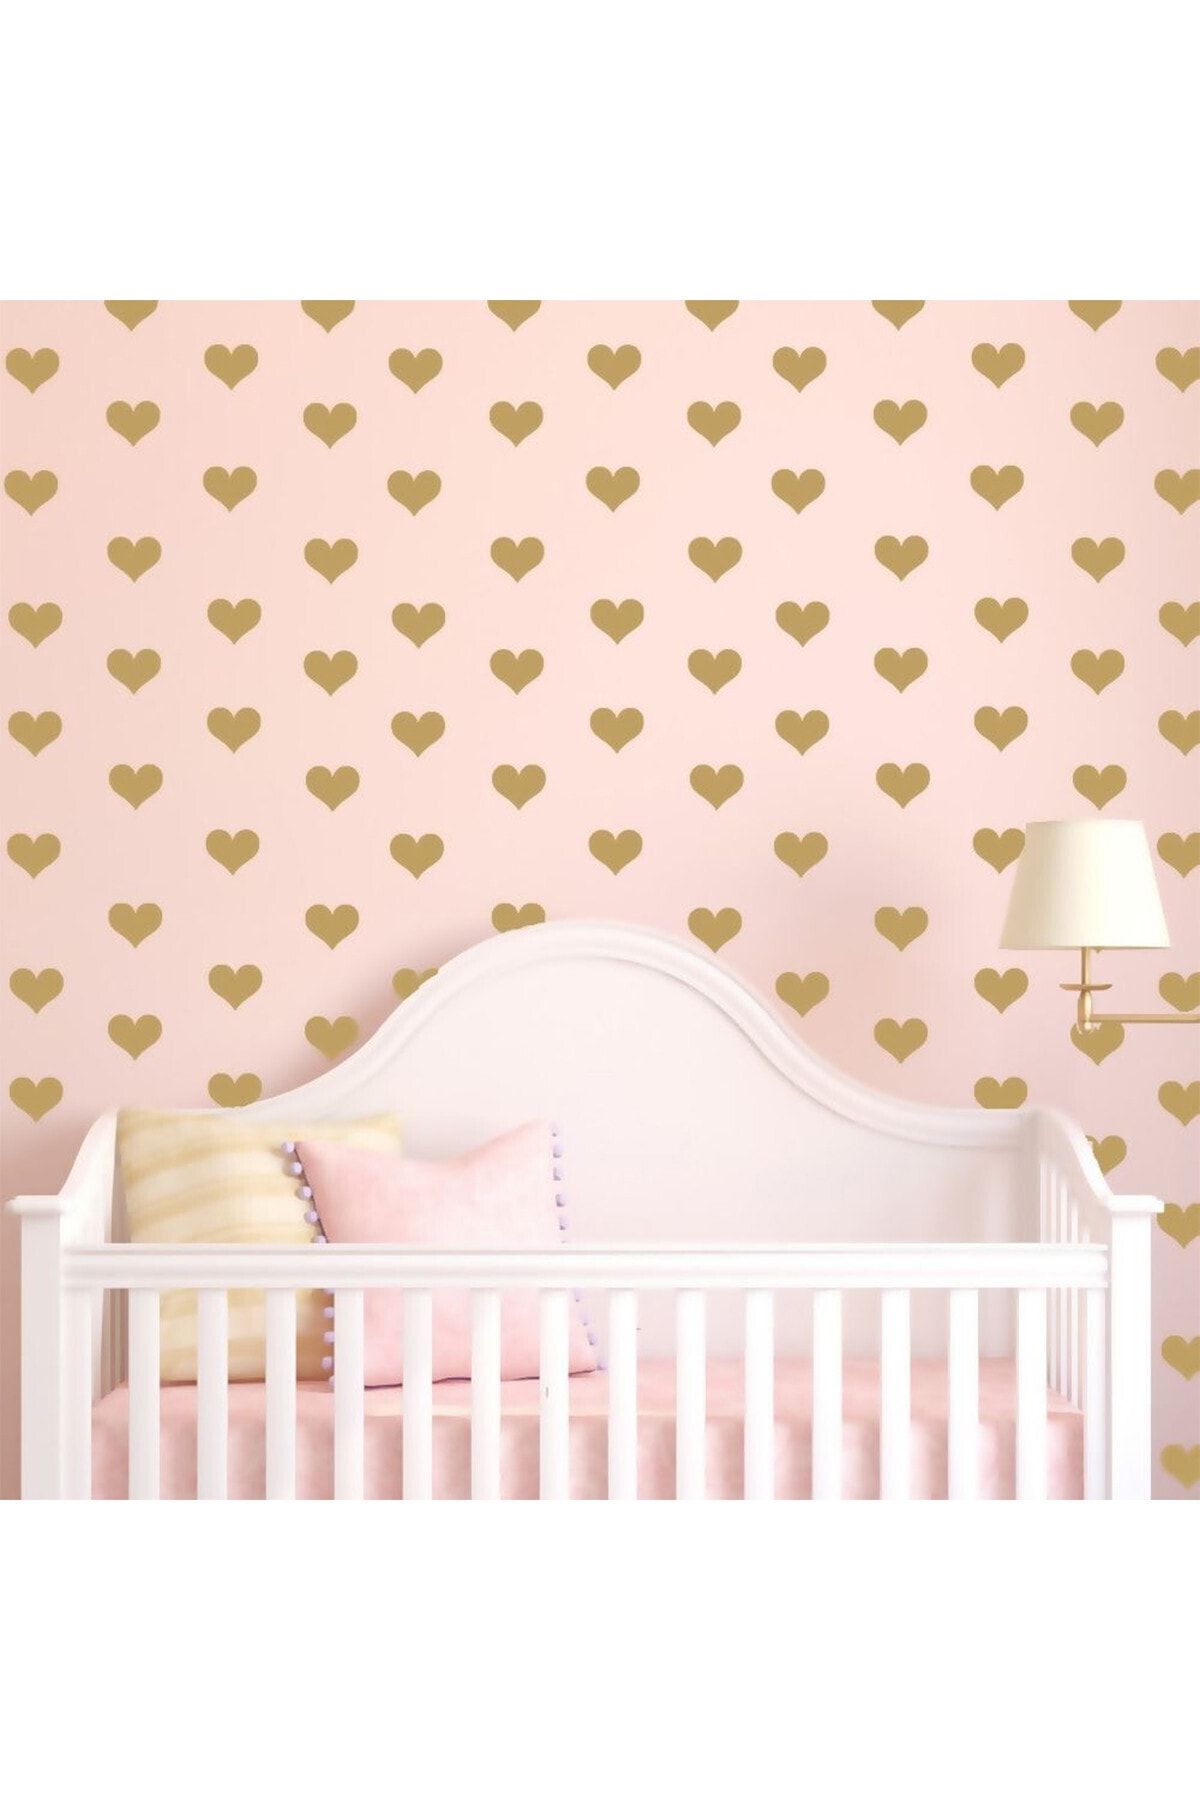 MSticker 48 Adet Altın Renkli Kalpler Çocuk Ve Bebek Odası Sticker